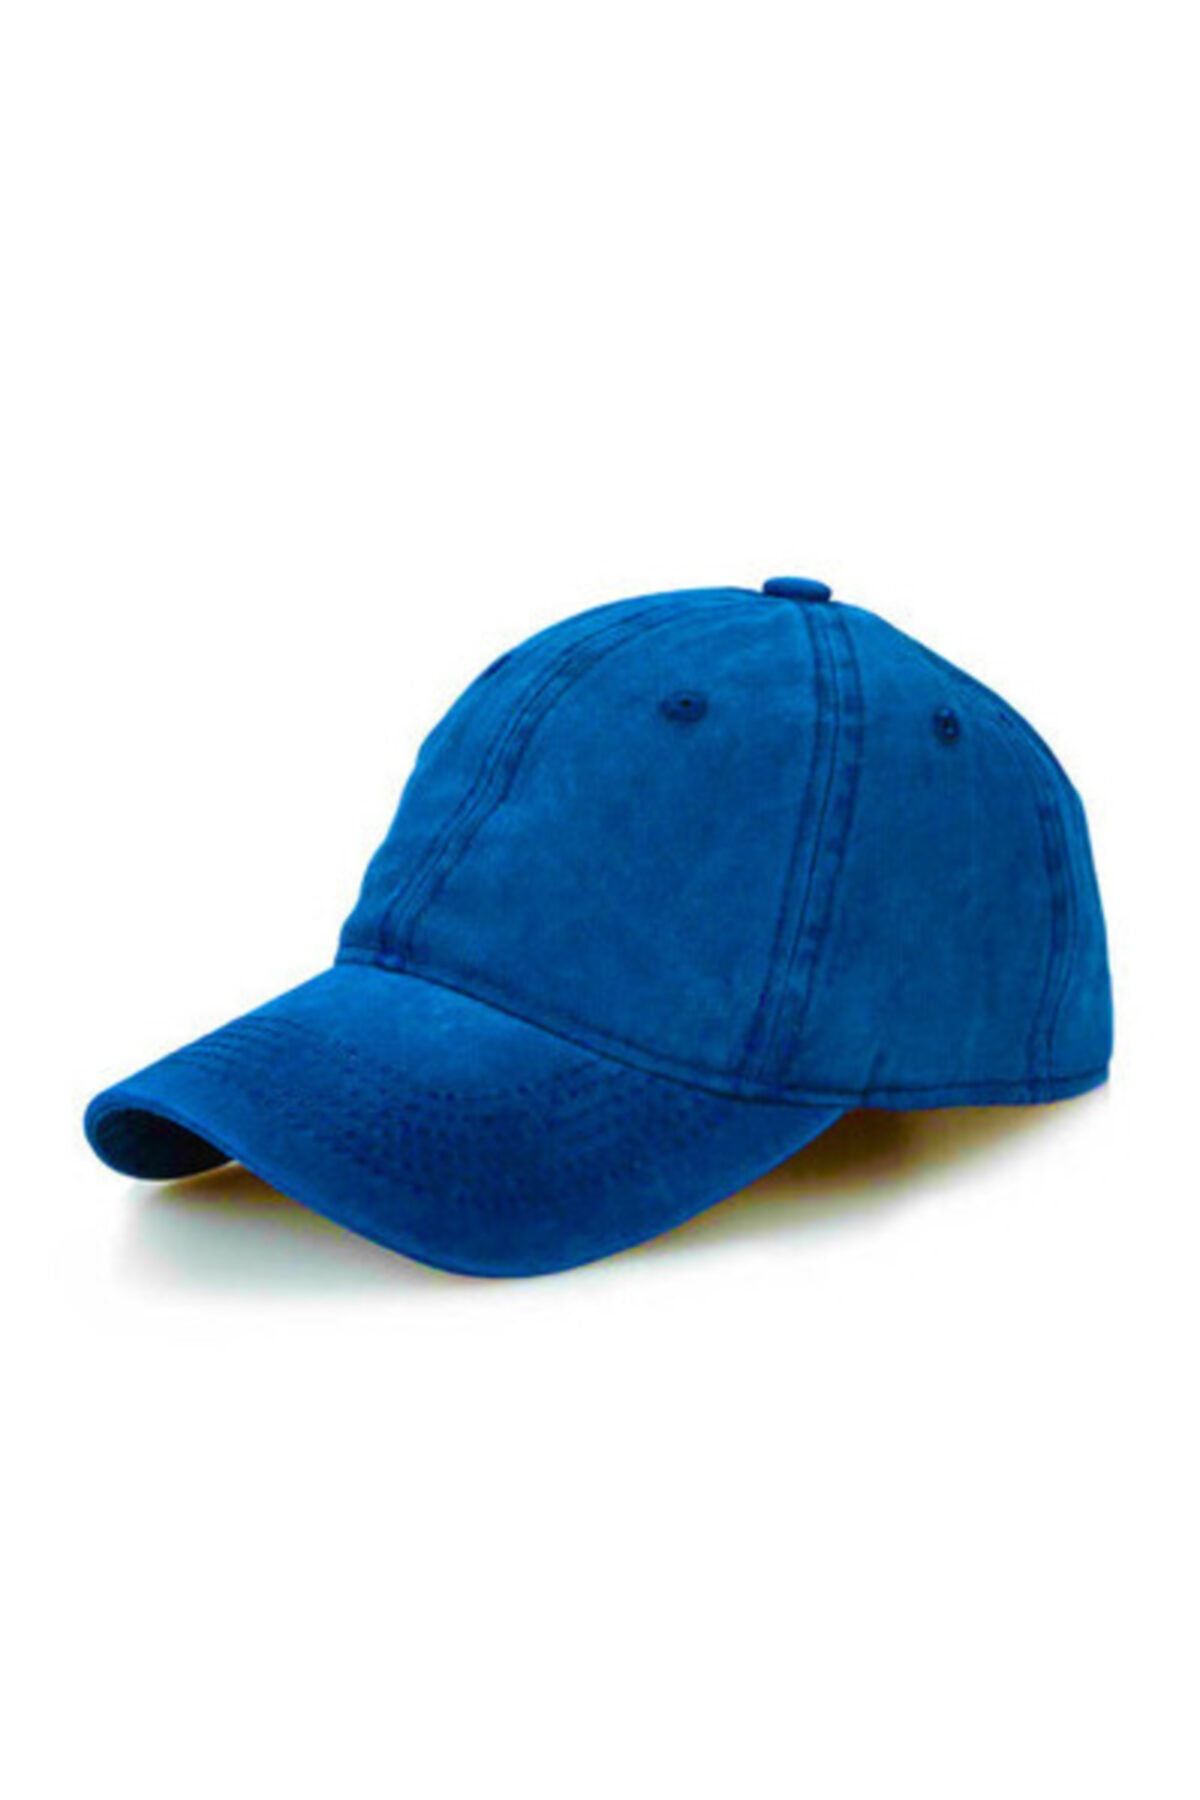 CosmoOutlet Düz Renk Yıkamalı Unisex Saks Mavi Şapka